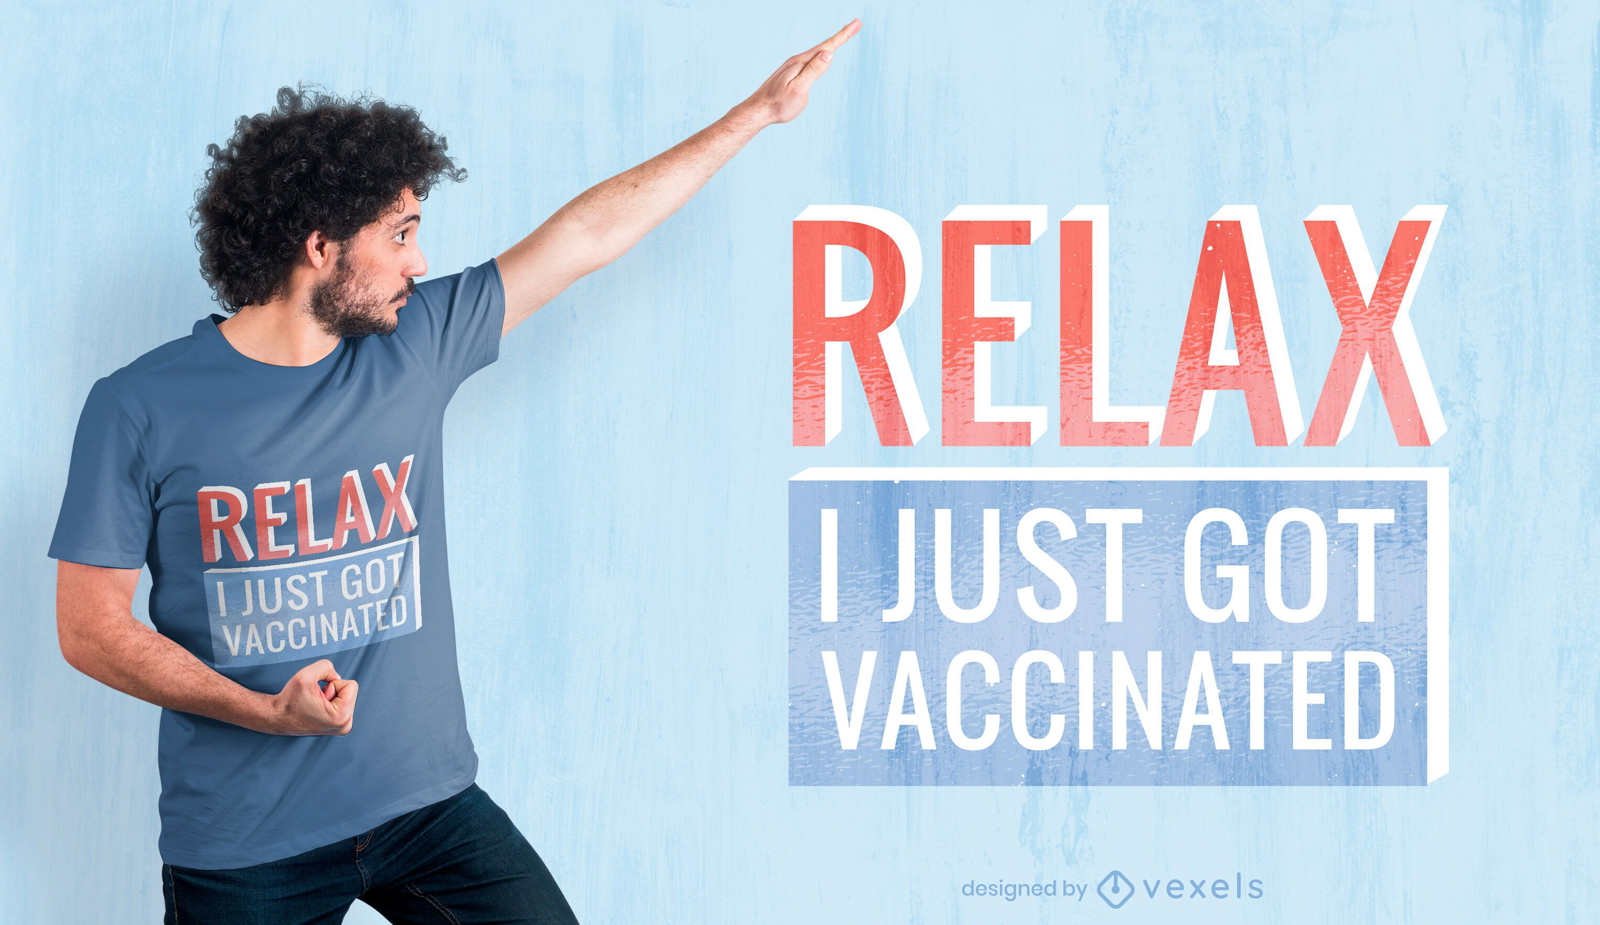 Acabo de vacunar el dise?o de la camiseta.